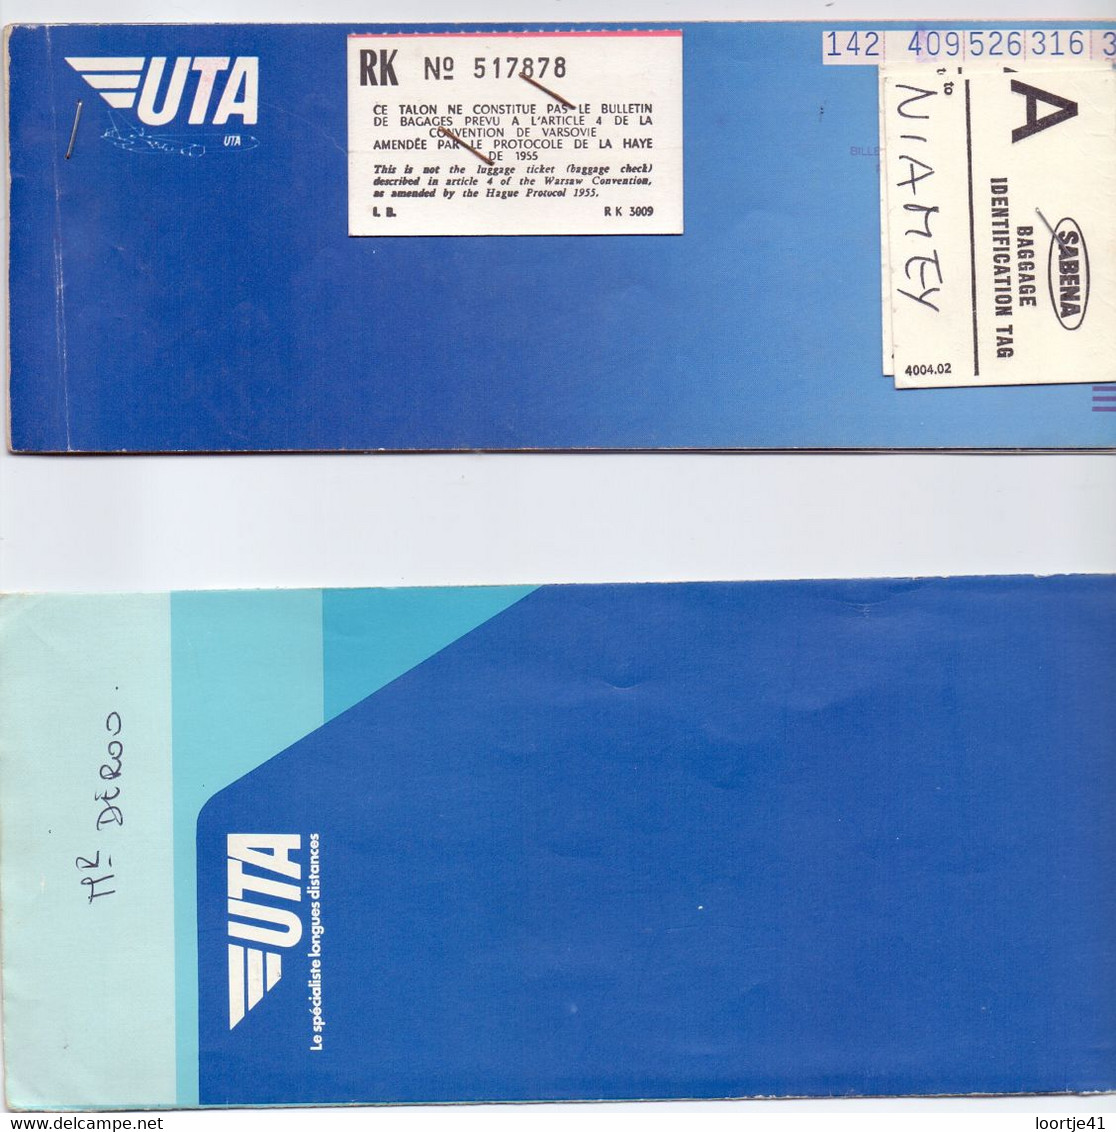 Ticket Luchtvaart Airplane - UTA  - 1978 - Tickets